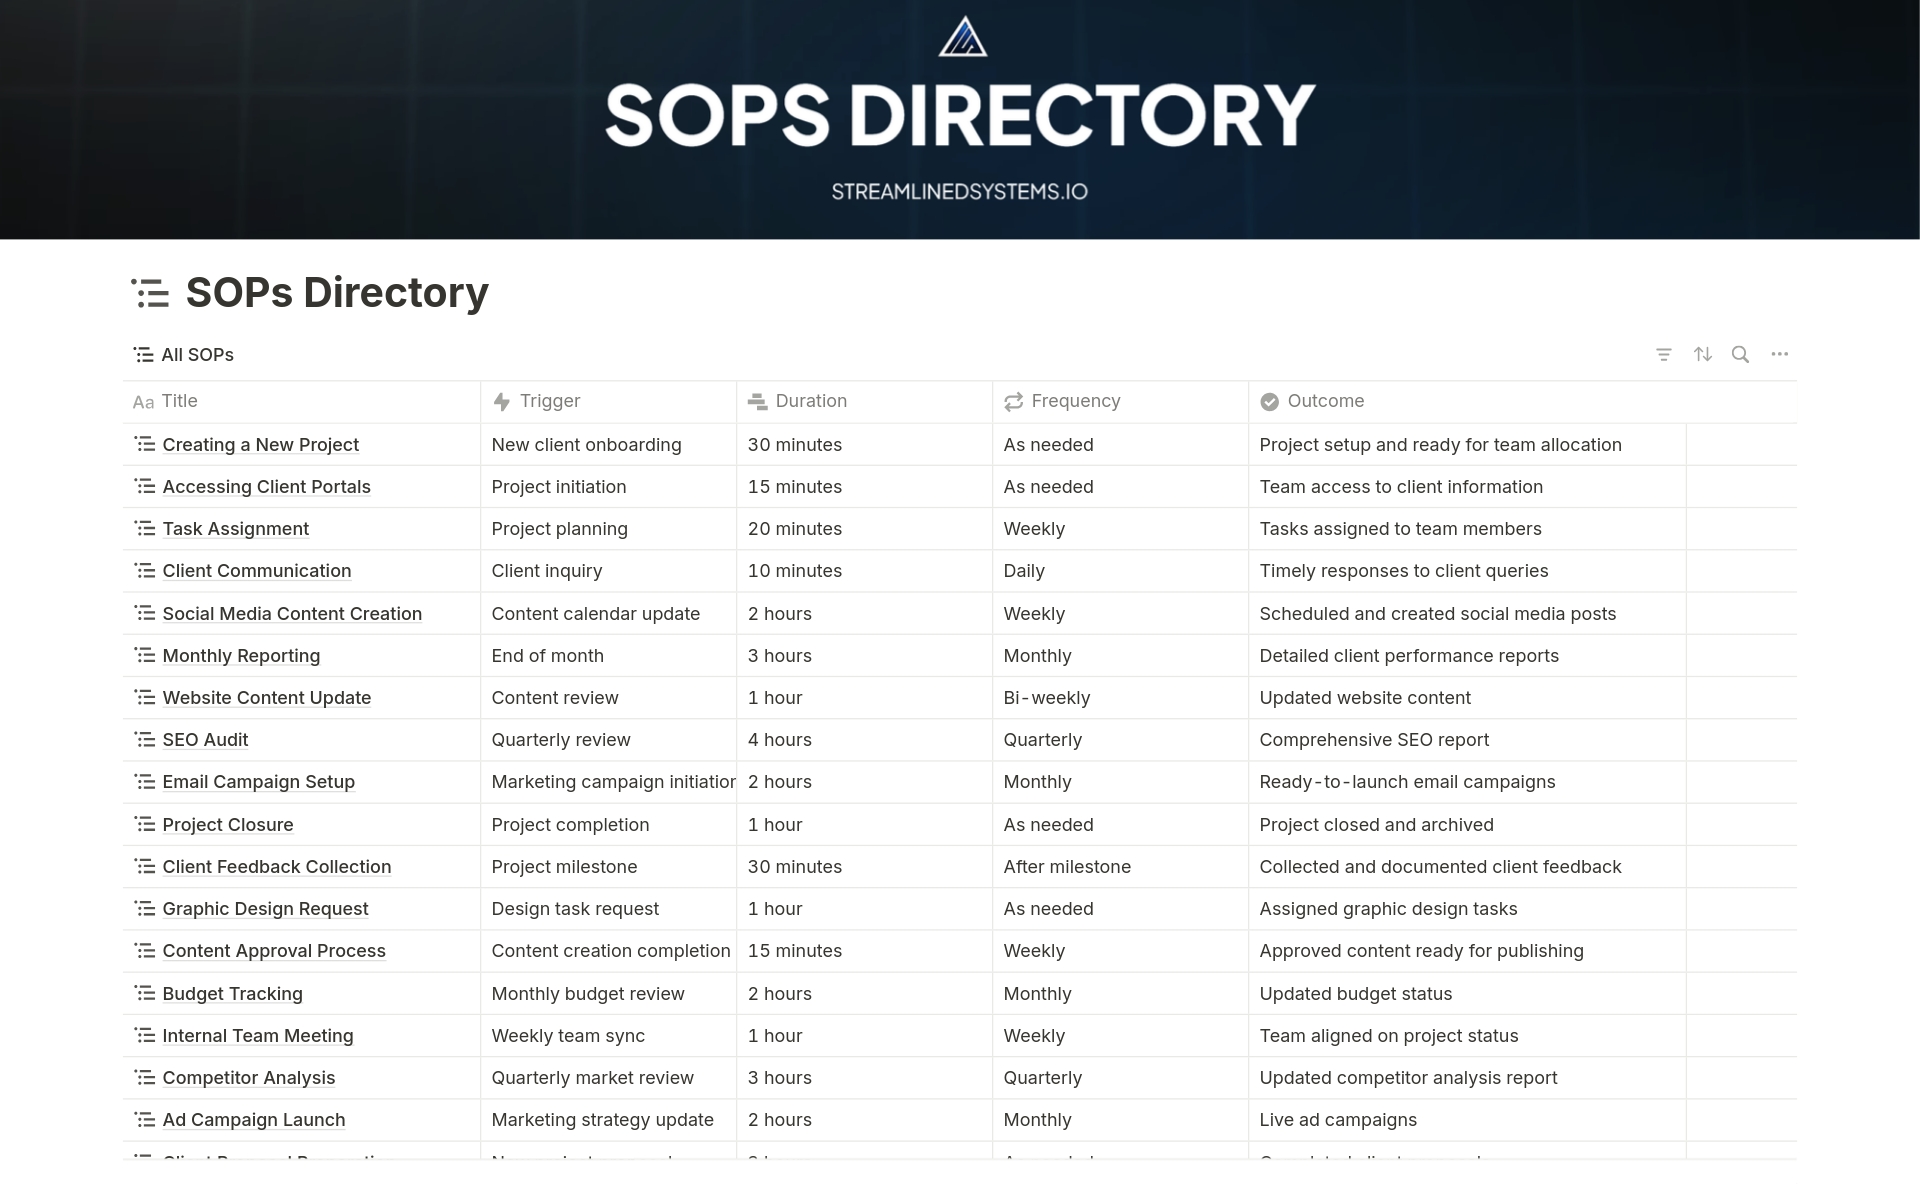 Uma prévia do modelo para SOPs Directory